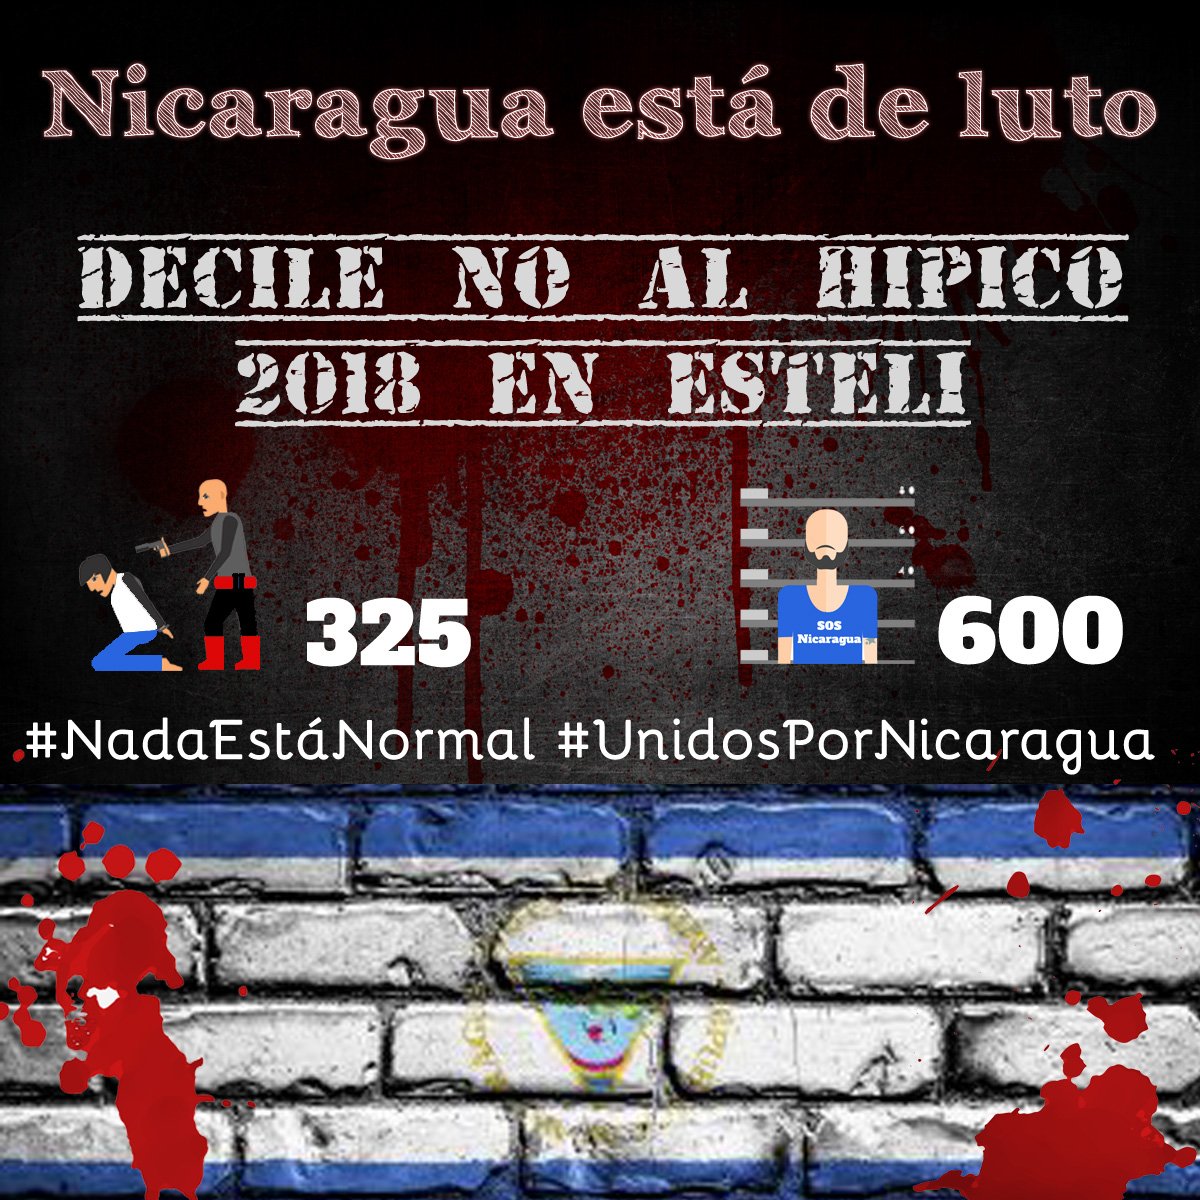 No hay nada q celebrar en los hípicos de diciembre en Estelí con al menos 325 asesinados por policías y paramilitares, y con más de 600 presos políticos. #NadaEstaNormal en Nicaragua. No seamos indiferentes ante tanta injusticia de la dictadura. #UnidosPorNicaragua #SOSNicaragua